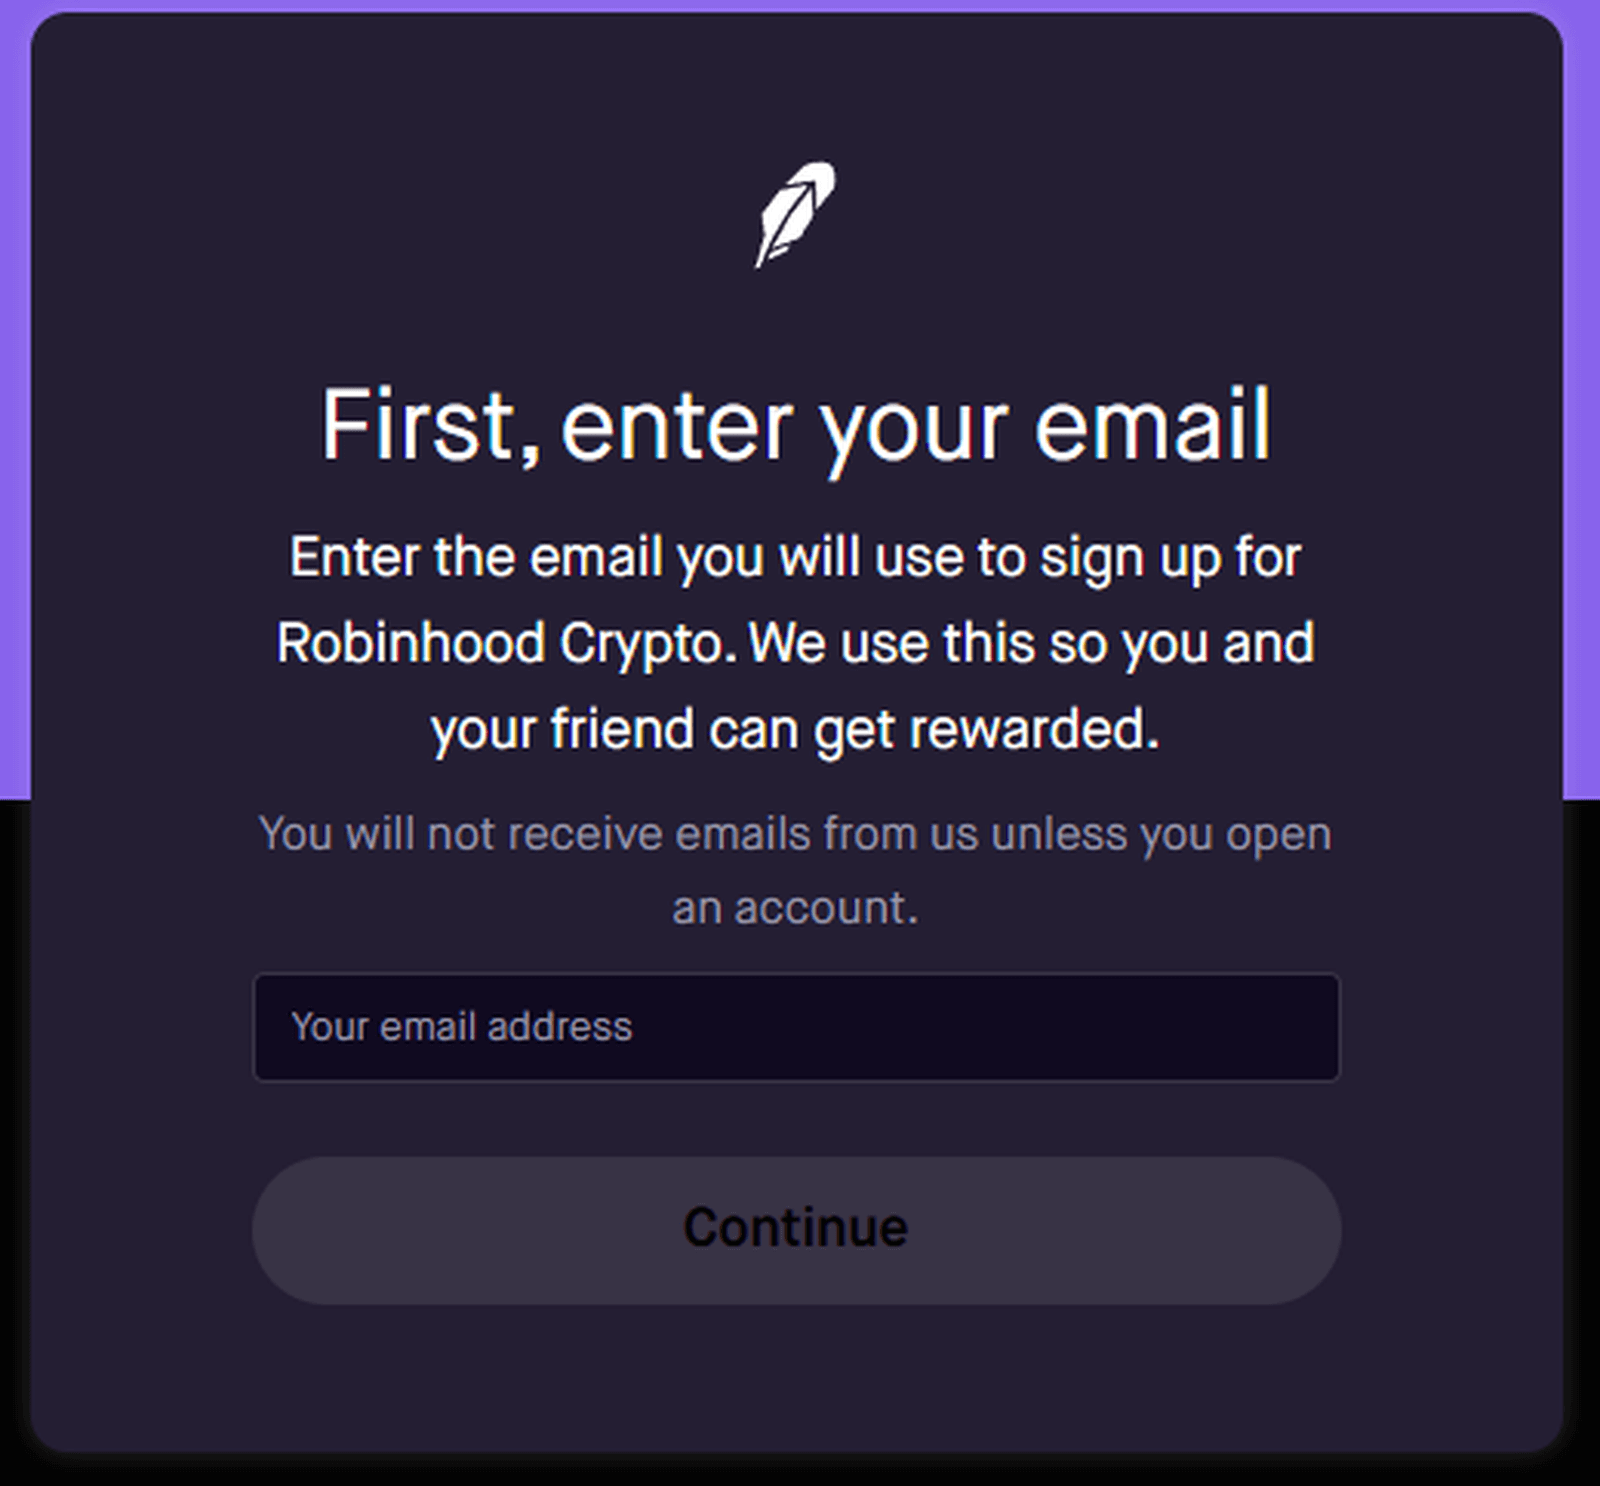 Podaj adres e-mail, aby otrzymać bonus powitalny w BTC od Robinhood Crypto